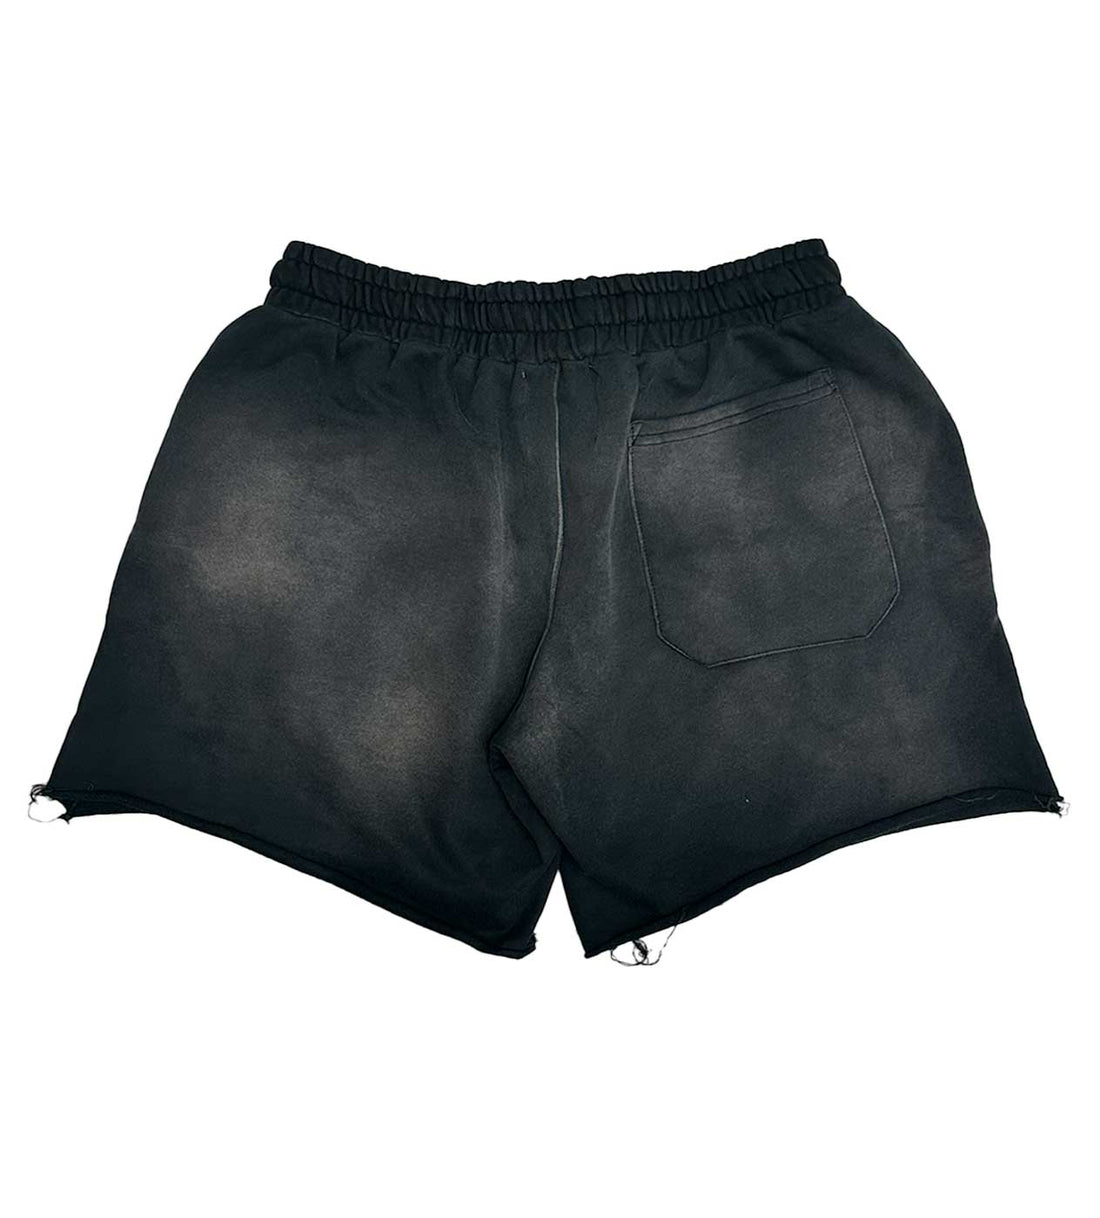 Vertabrae Black Double Emblem Shorts | Restock AR